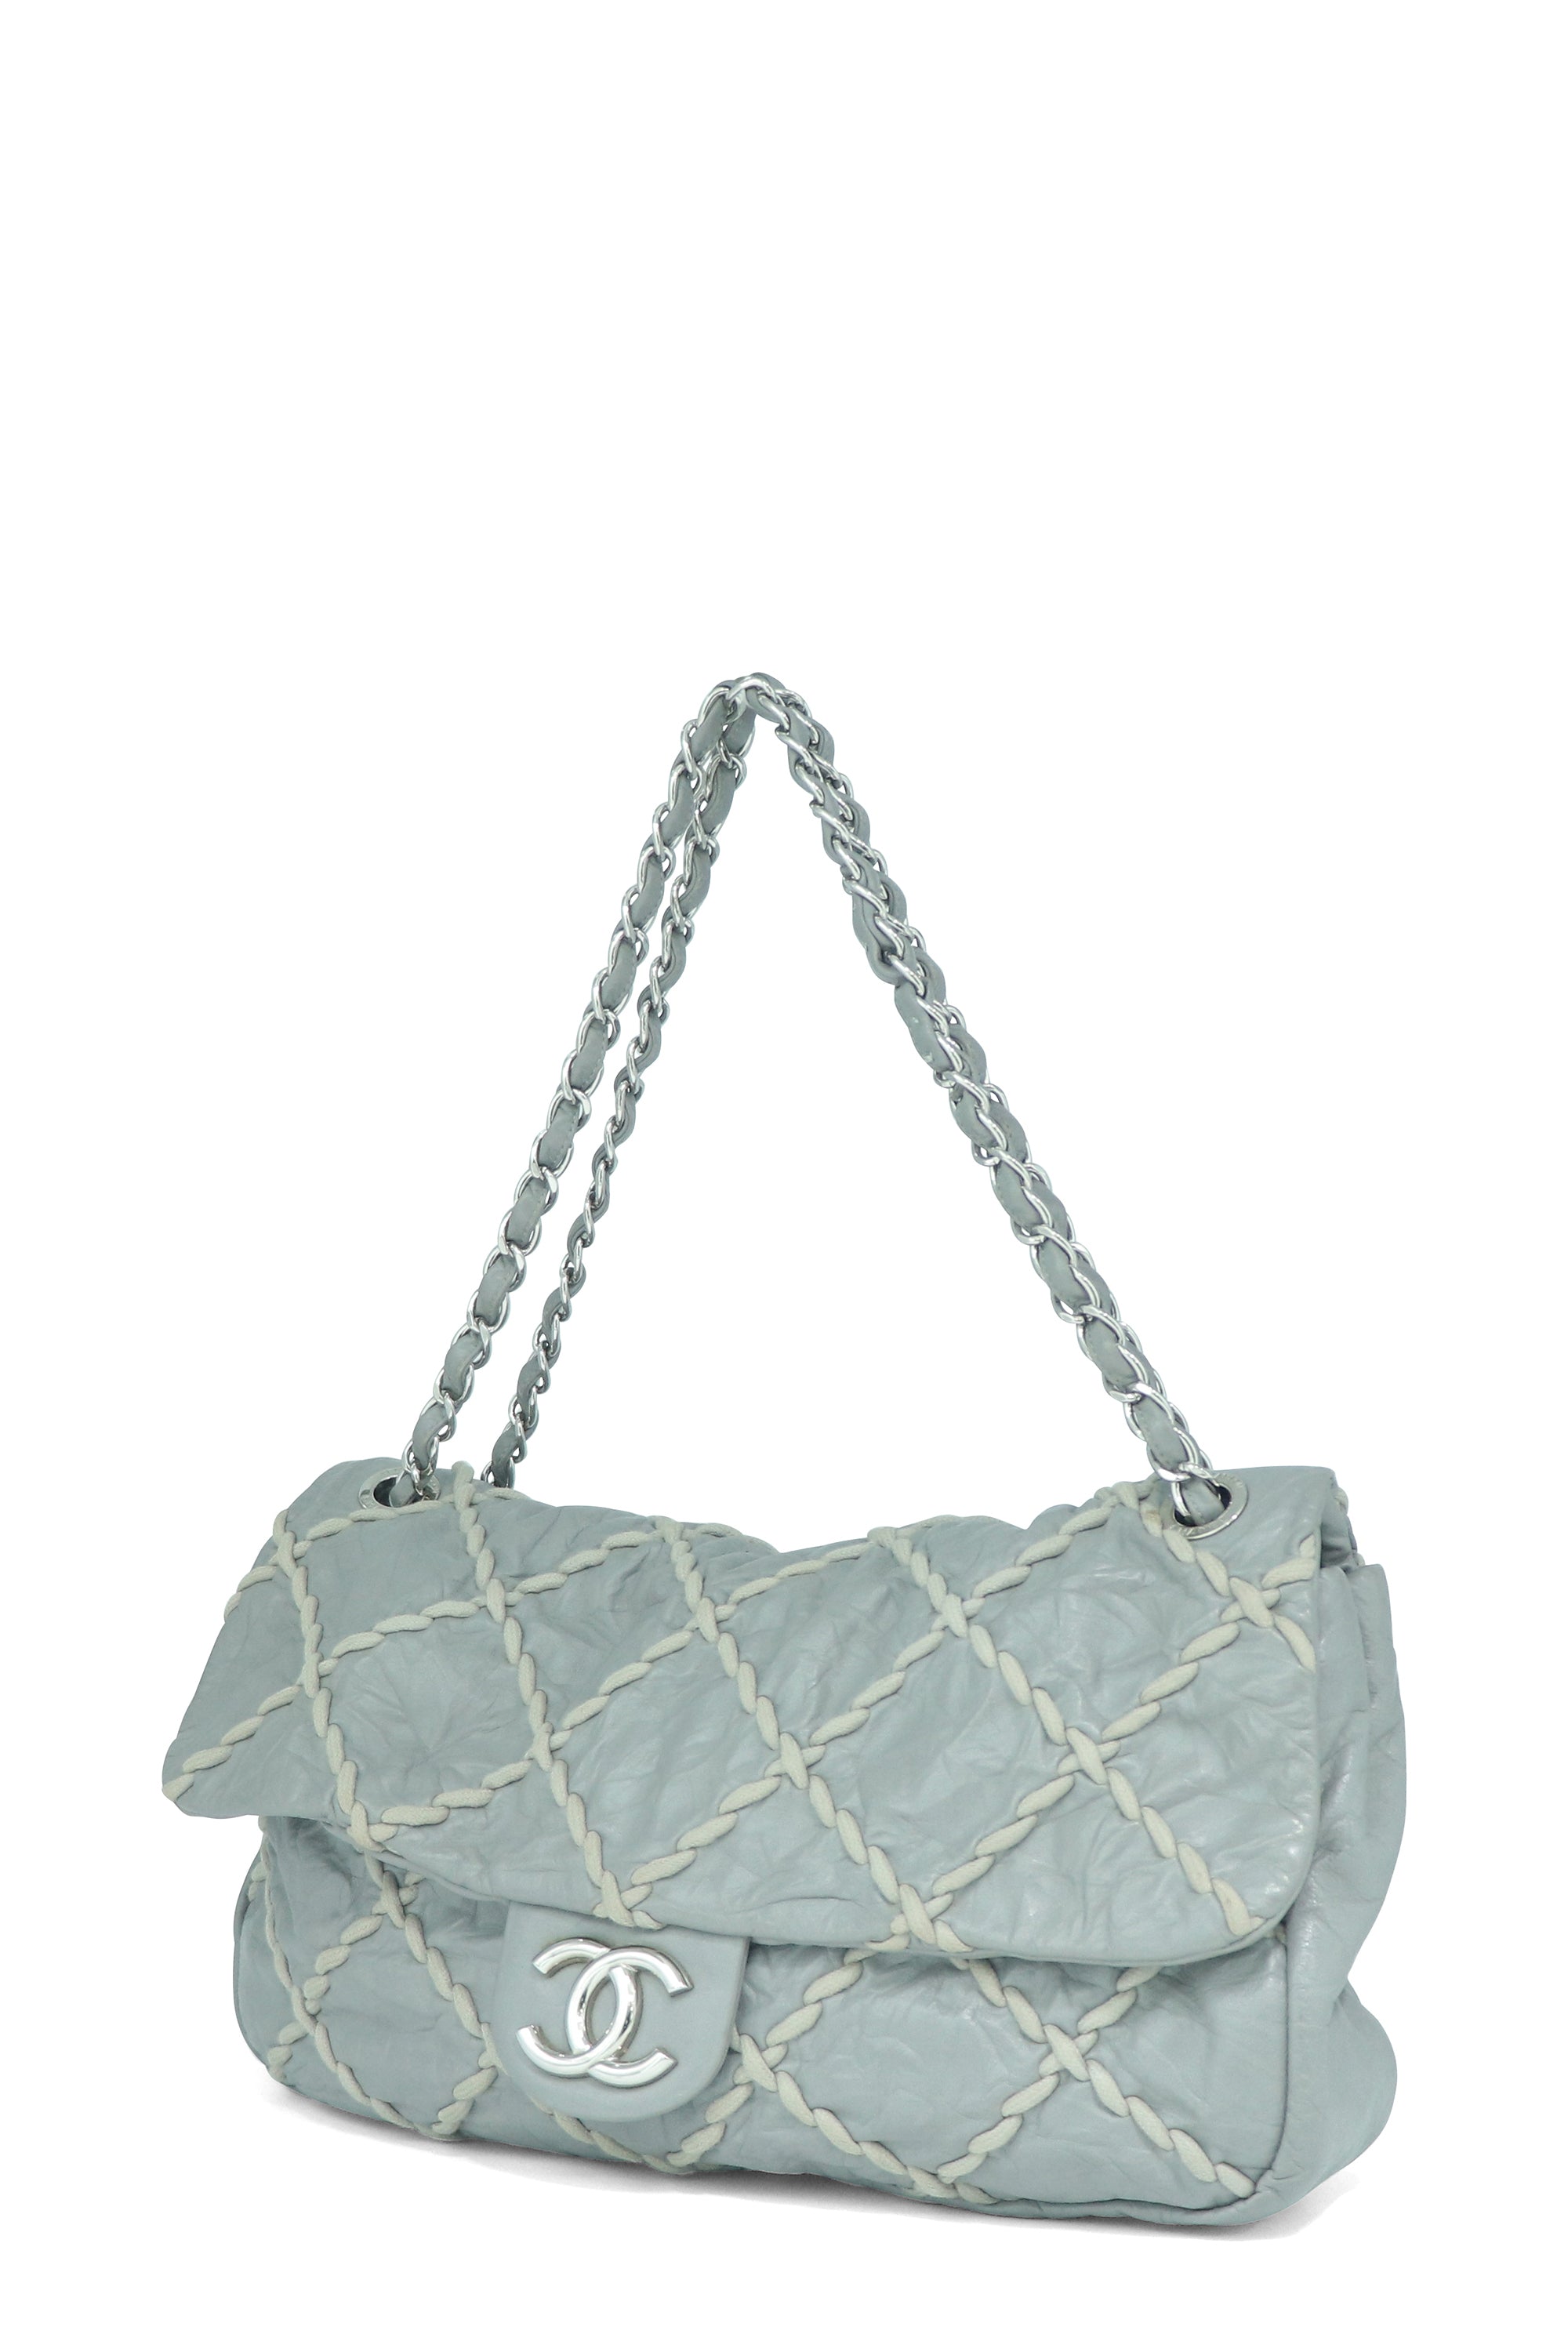 Chanel Gray-Black Jumbo Size Soft Bubble Quilt Flap Bag – Boutique